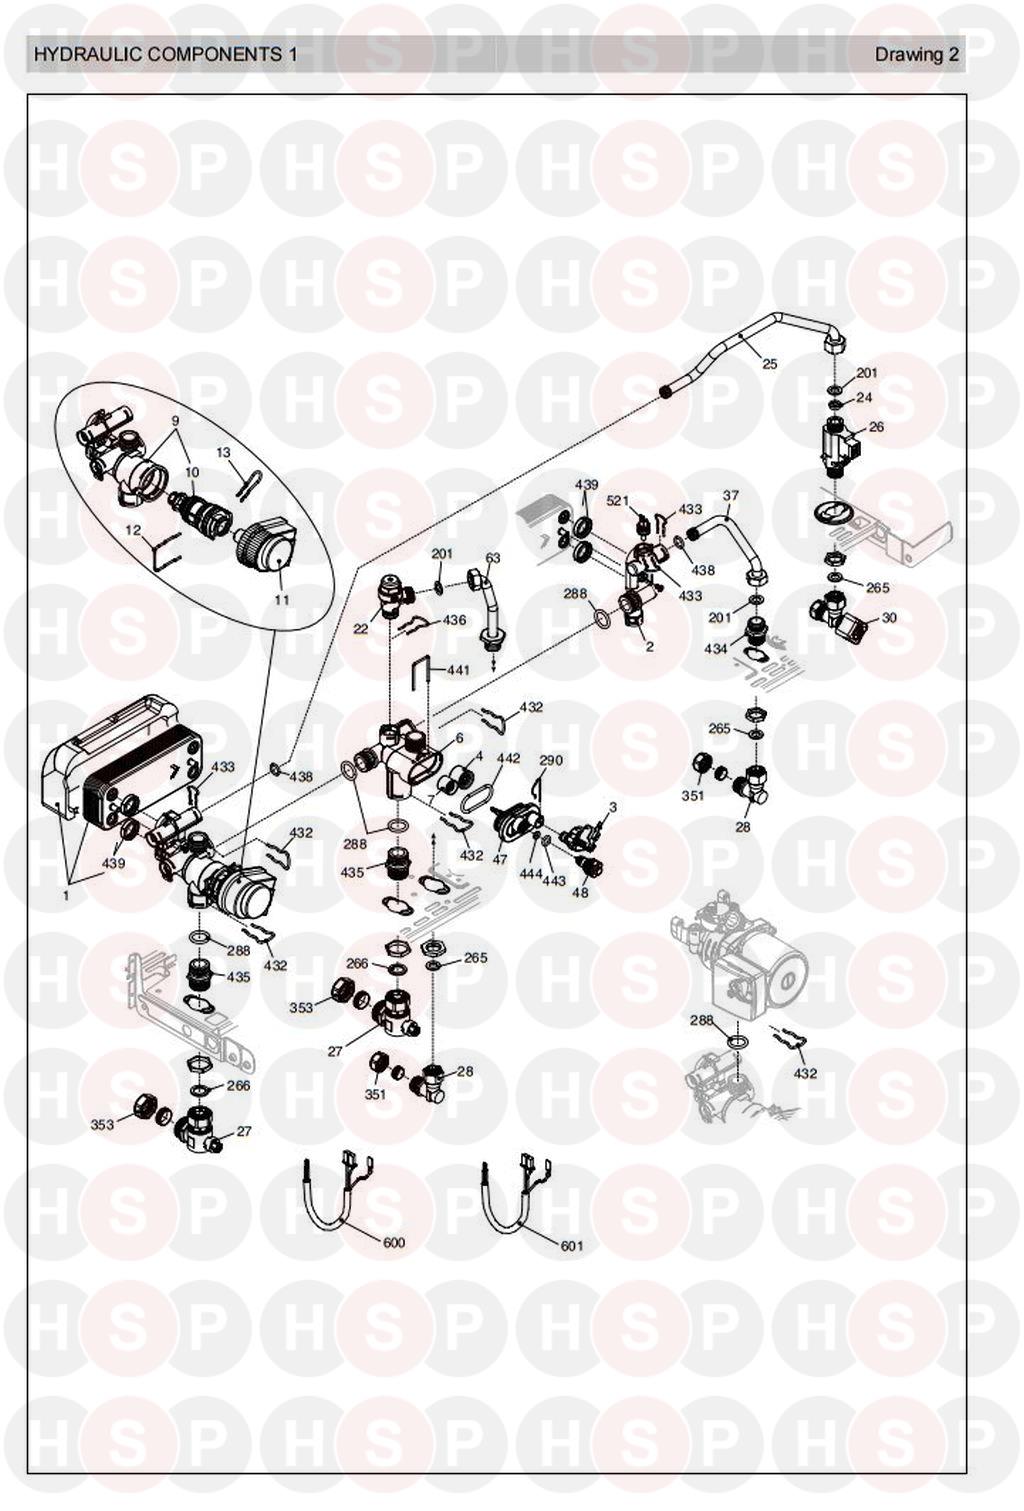 Hydraulics 1 diagram for Vokera Sabre 29 HE Plus (Old Version Pre 2007) Rev 2 (03/07)